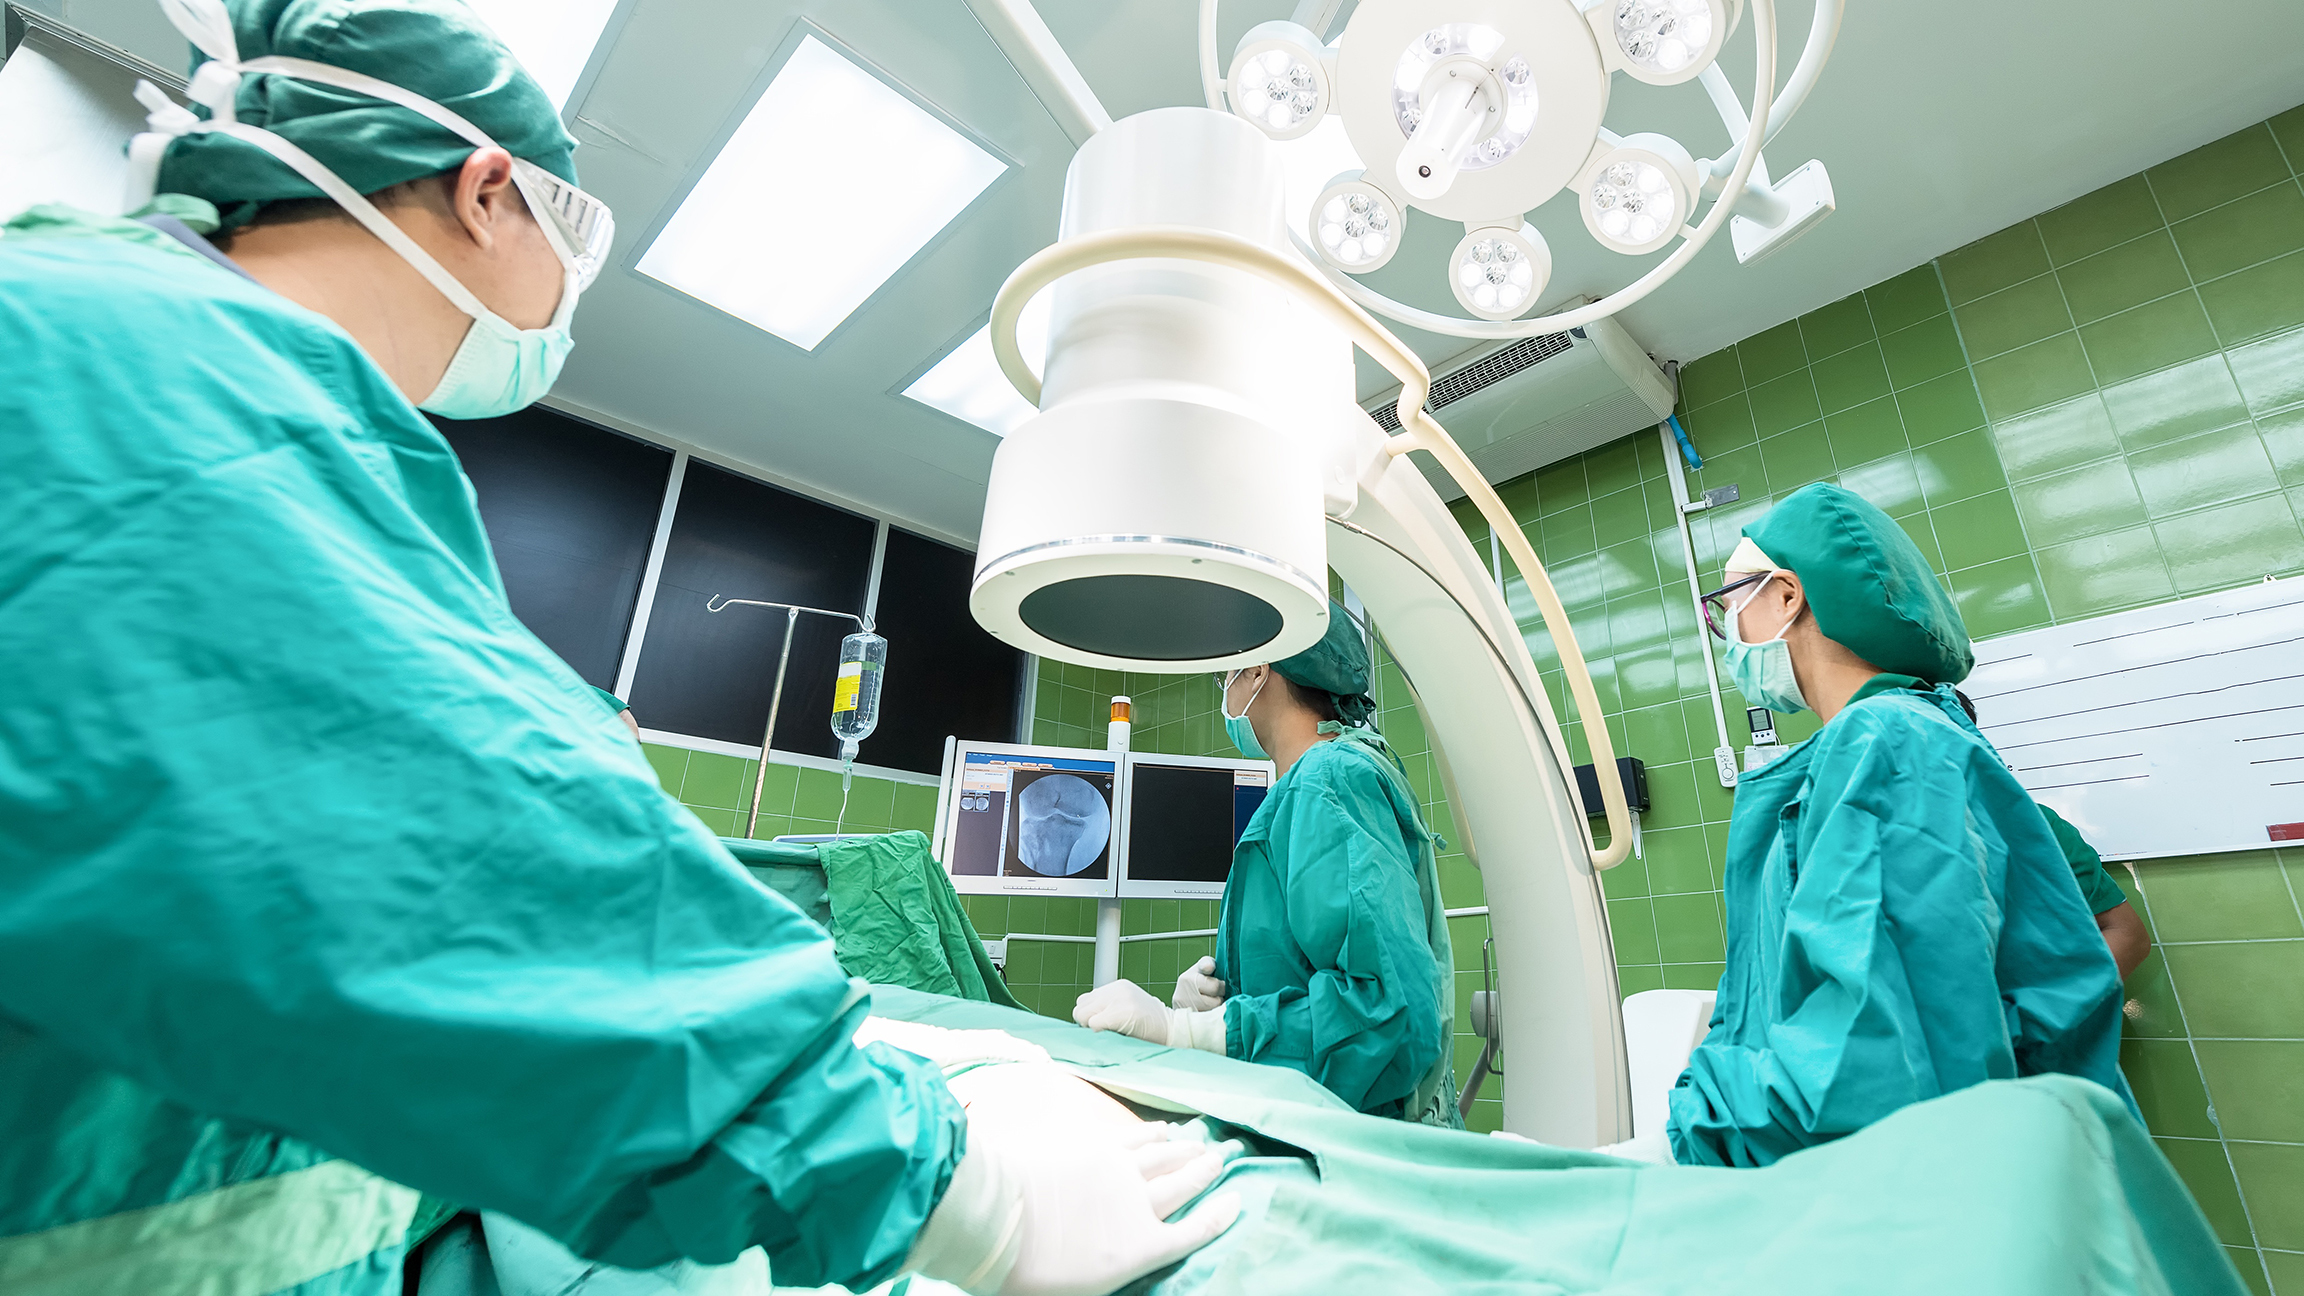 Тюменских врачей будут обучать пересадке органов